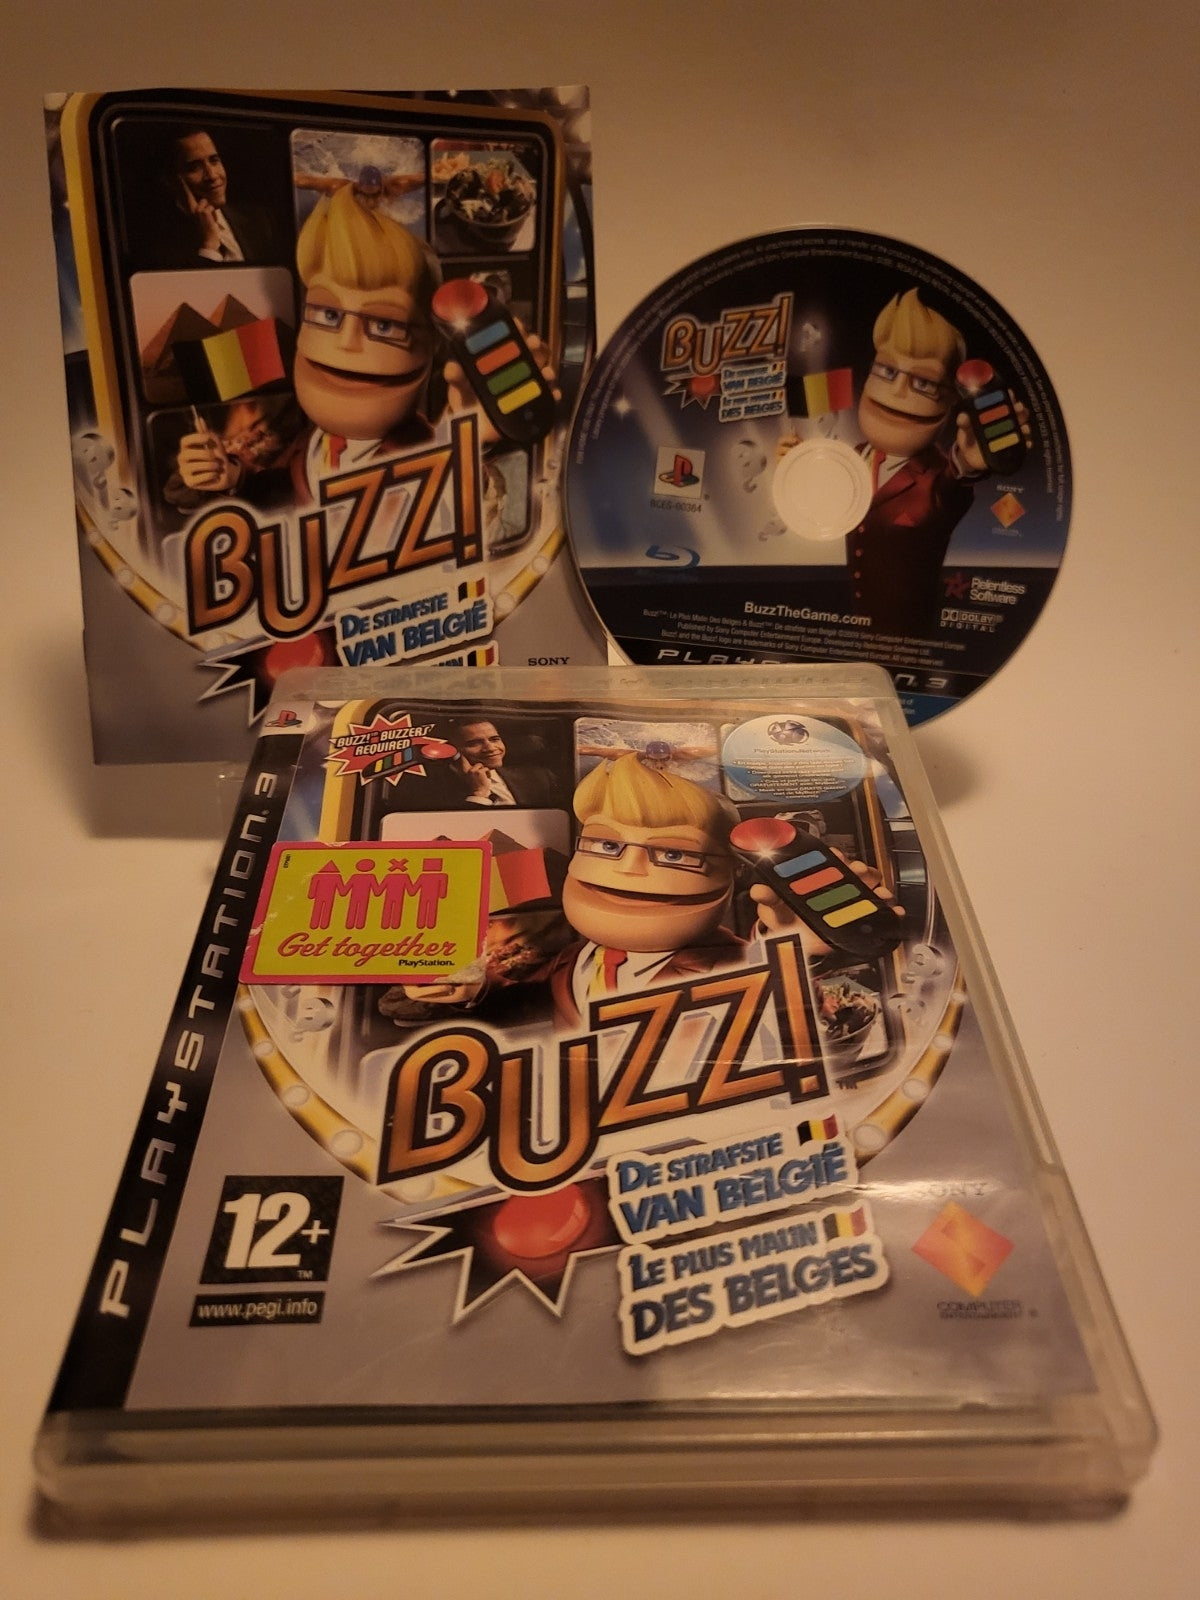 Buzz! De Strafste van België Playstation 3